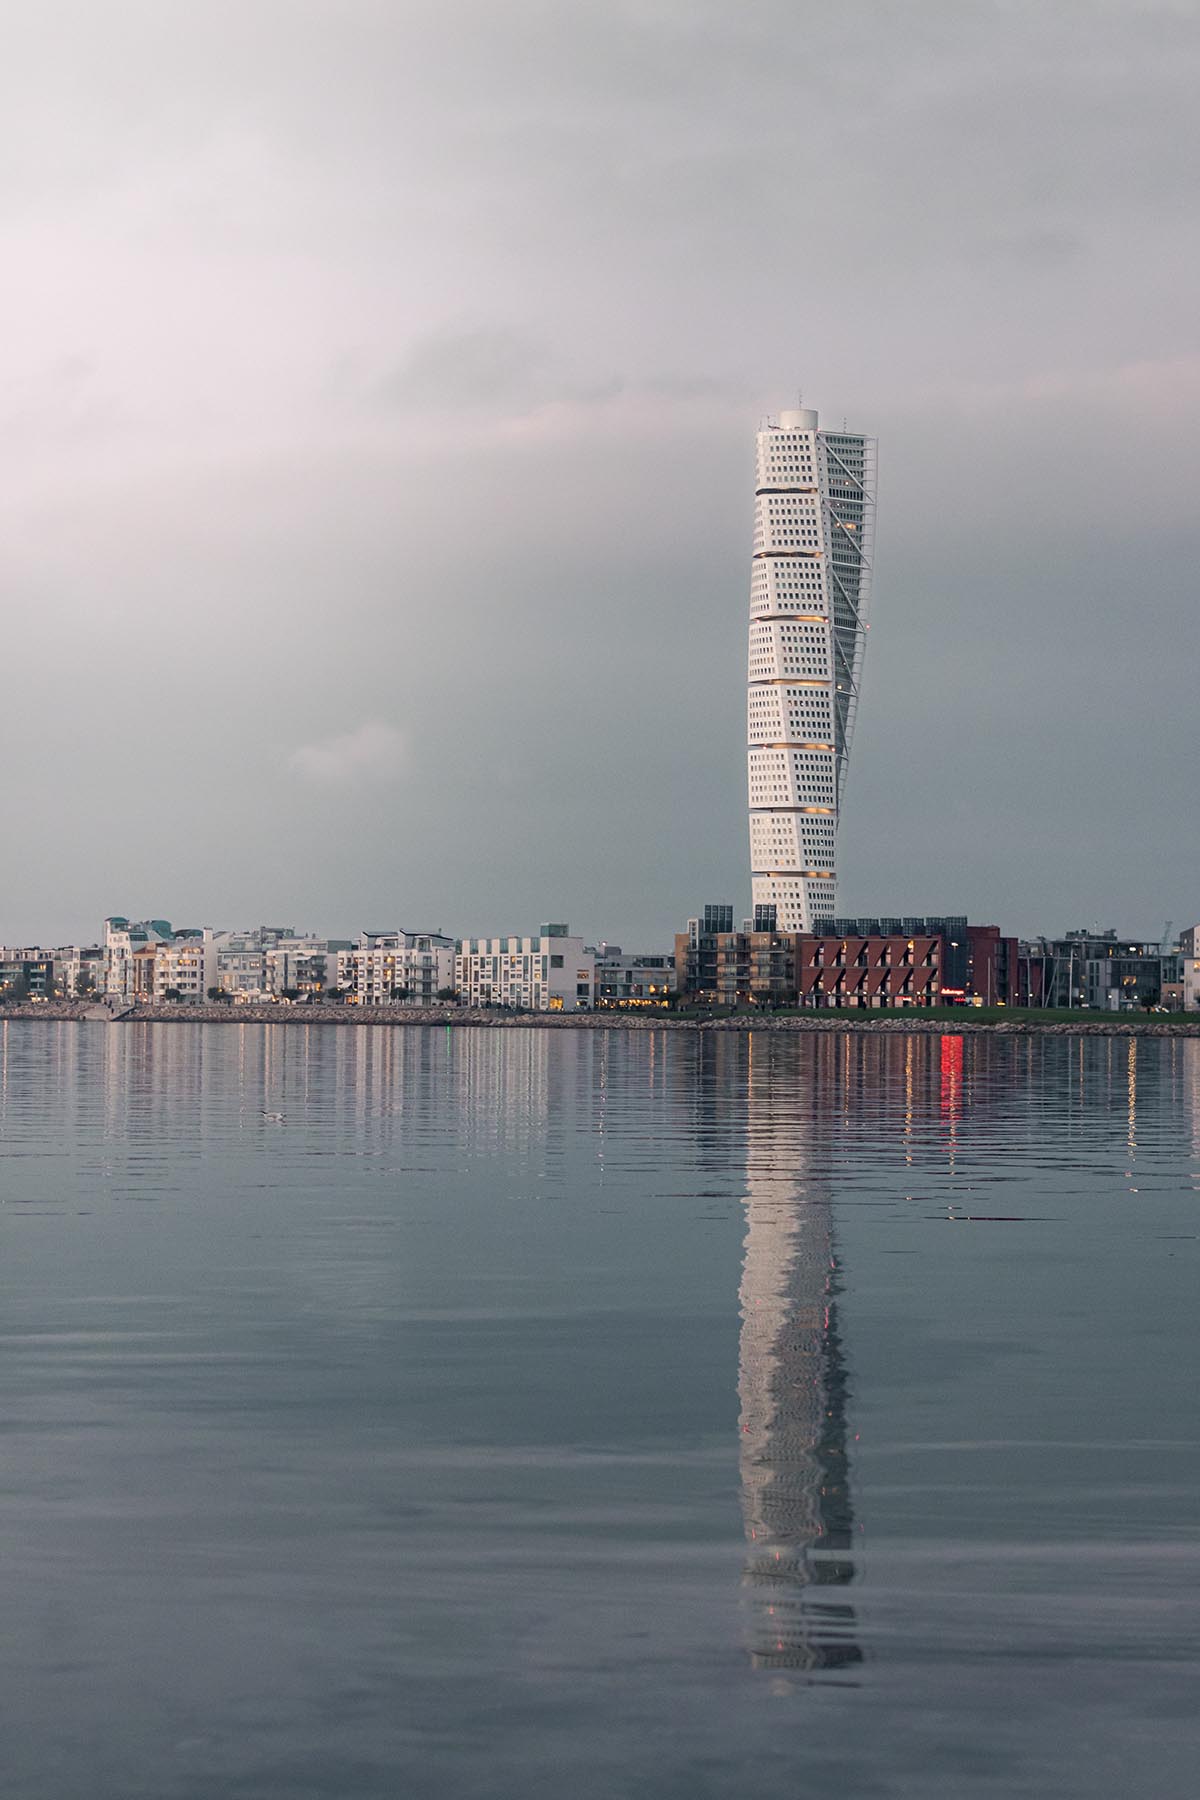 Климатически нейтральное здание: город Мальмё стремится стать углеродно-нейтральным к 2030 году. 